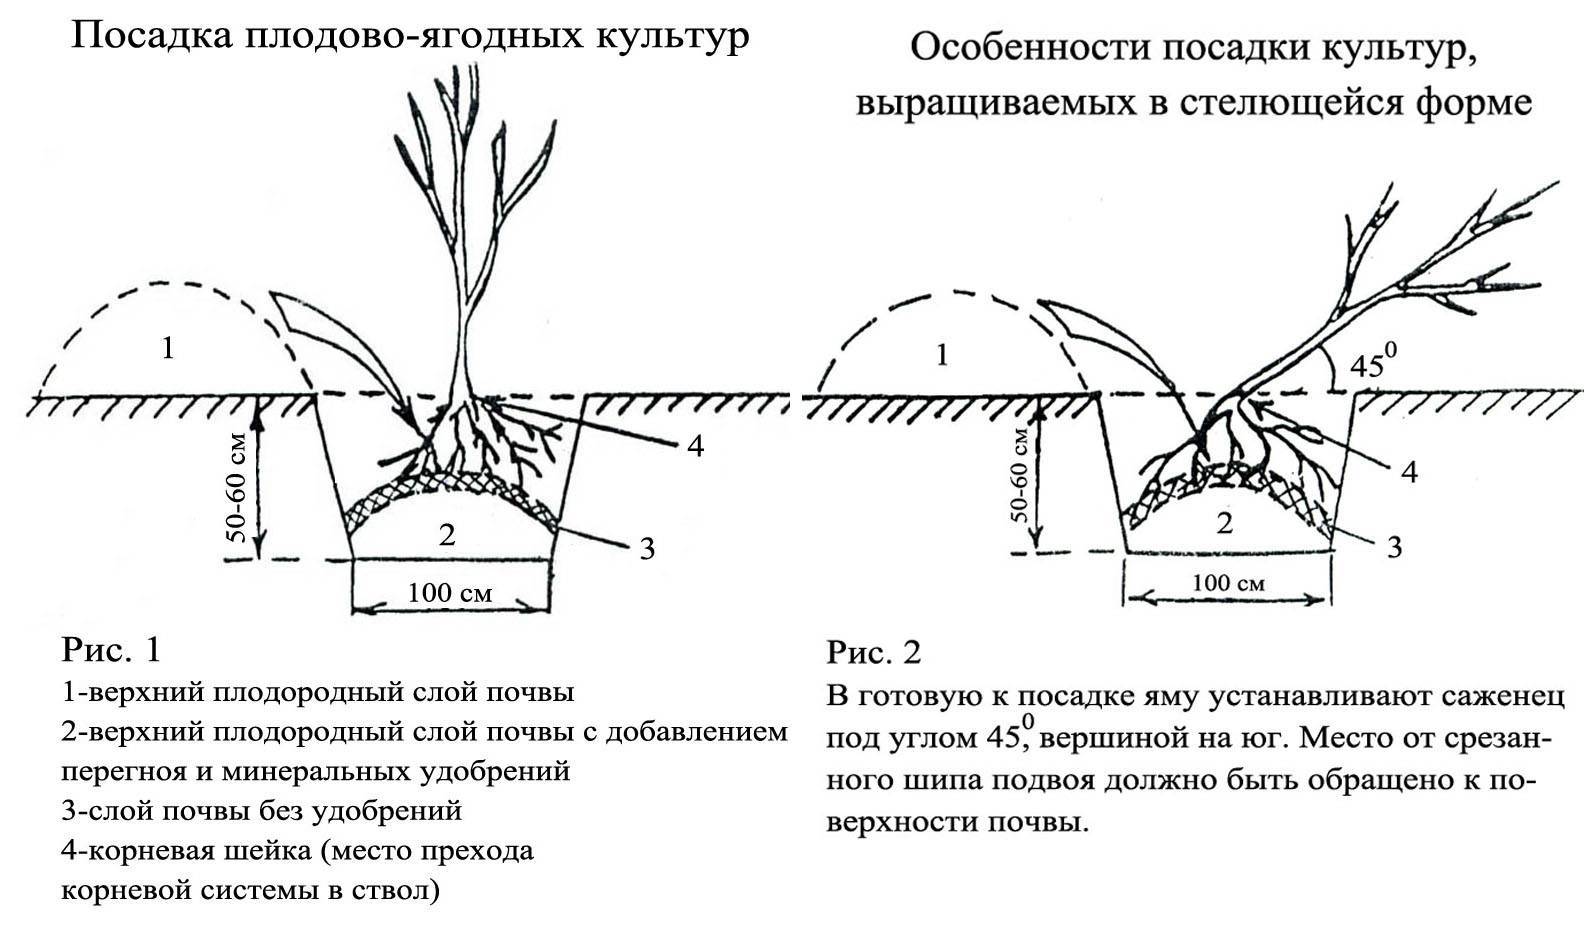 Посадка черной смородины весной саженцами в открытый грунт: сроки, схемы, правила посадки